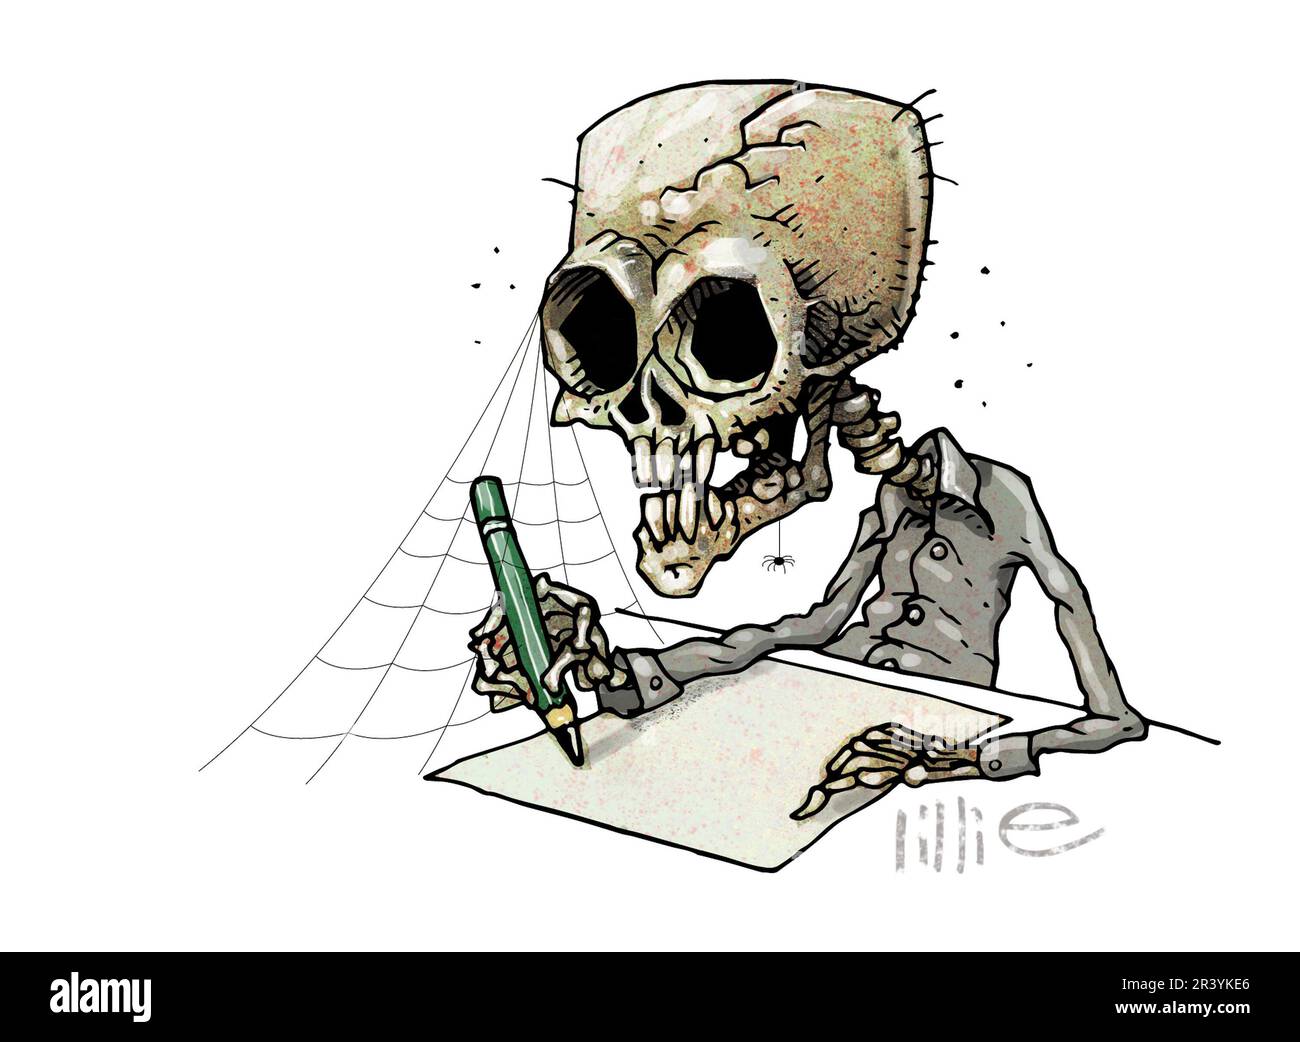 Lo scheletro dell'arte concettuale coperto di ciottoli, tenendo la matita della penna al foglio bianco di carta, giorno noioso, in attesa di un rilancio, lavoro di fine morto, ha funzionato alla morte Foto Stock